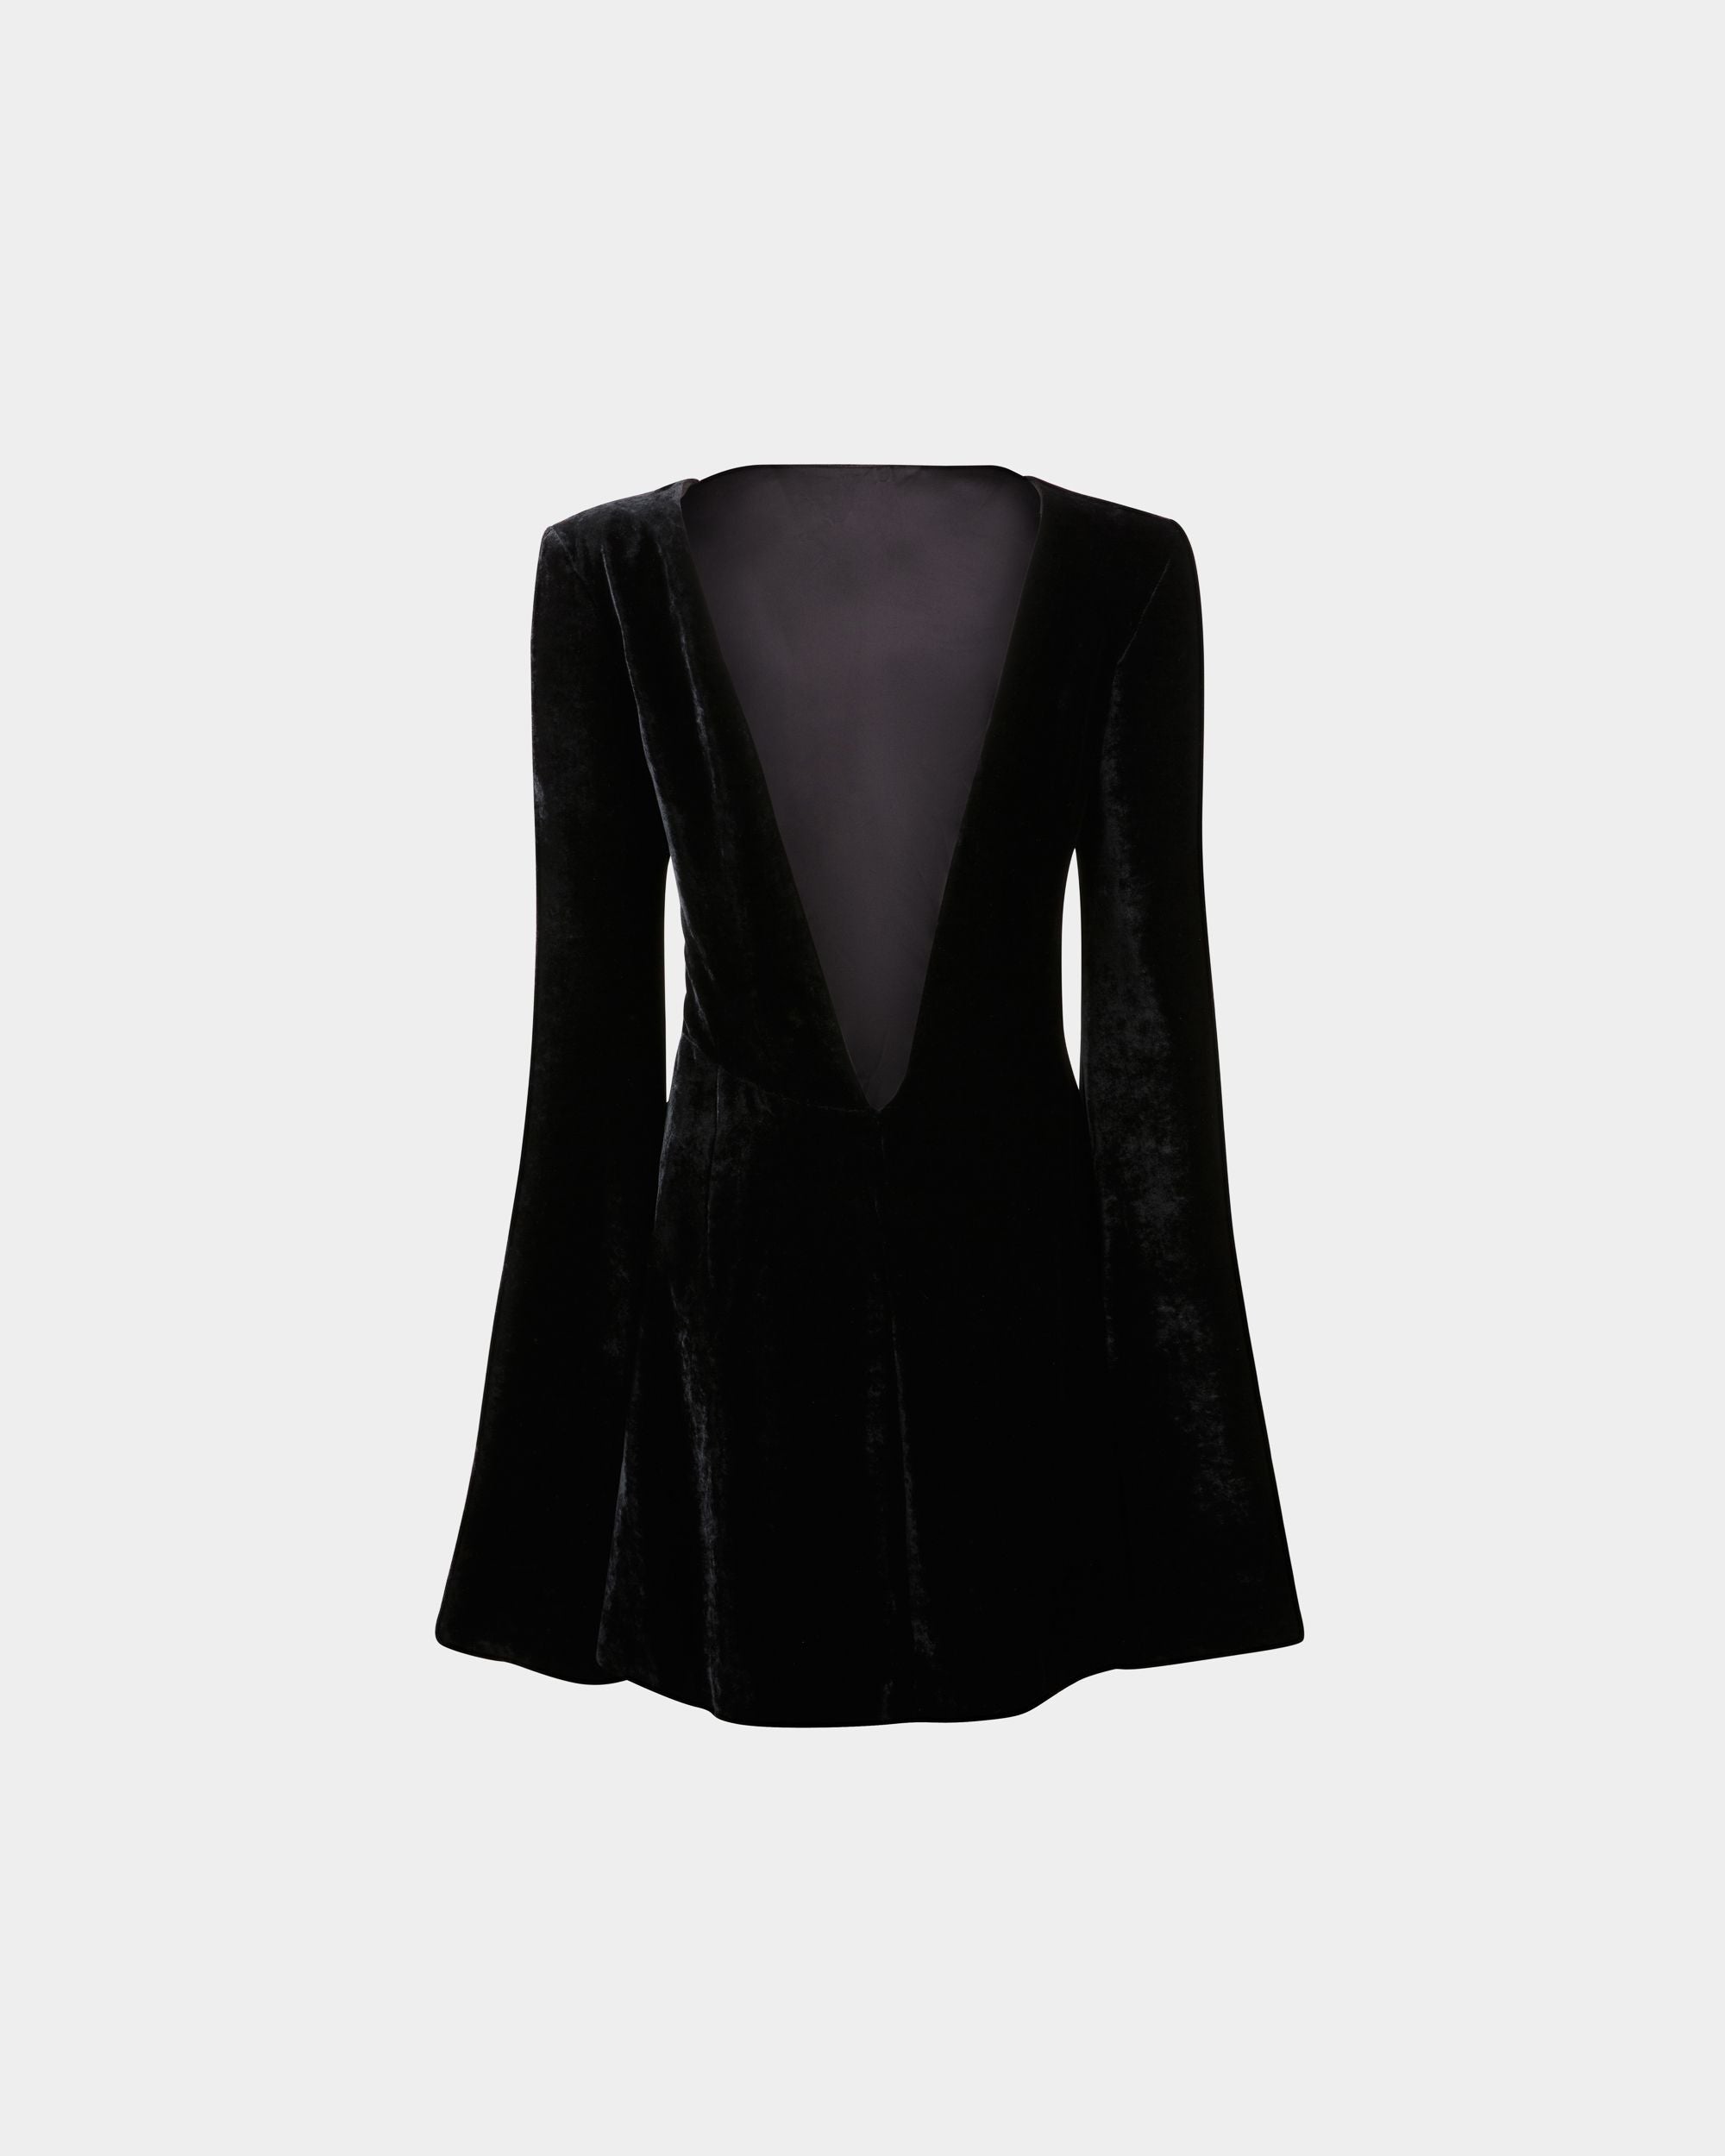 Women's Mini Dress in Black Velvet | Bally | Still Life Back